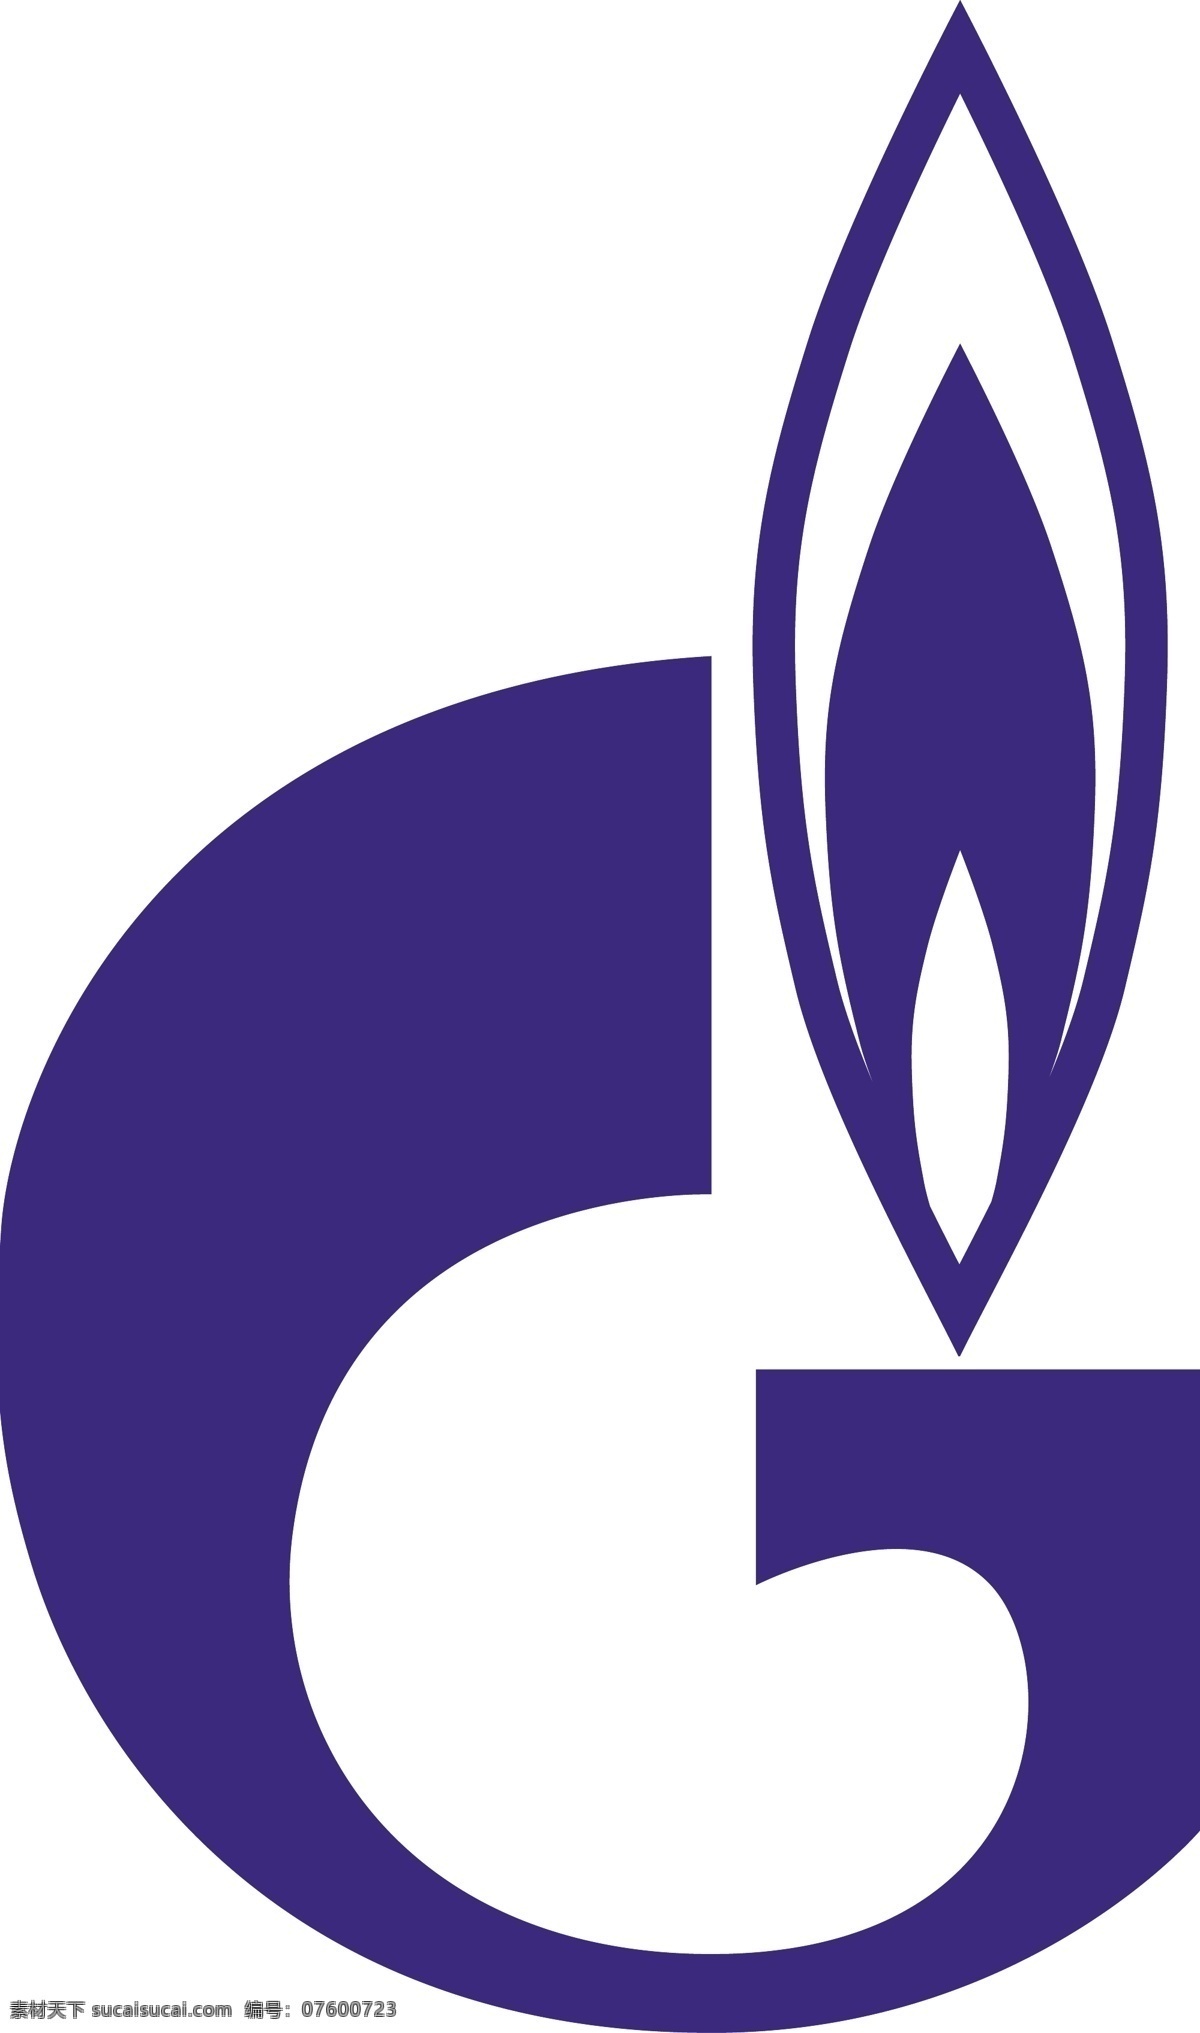 俄罗斯 天然气 工业 股份公司 旧 版 免费 标志 自由 psd源文件 logo设计